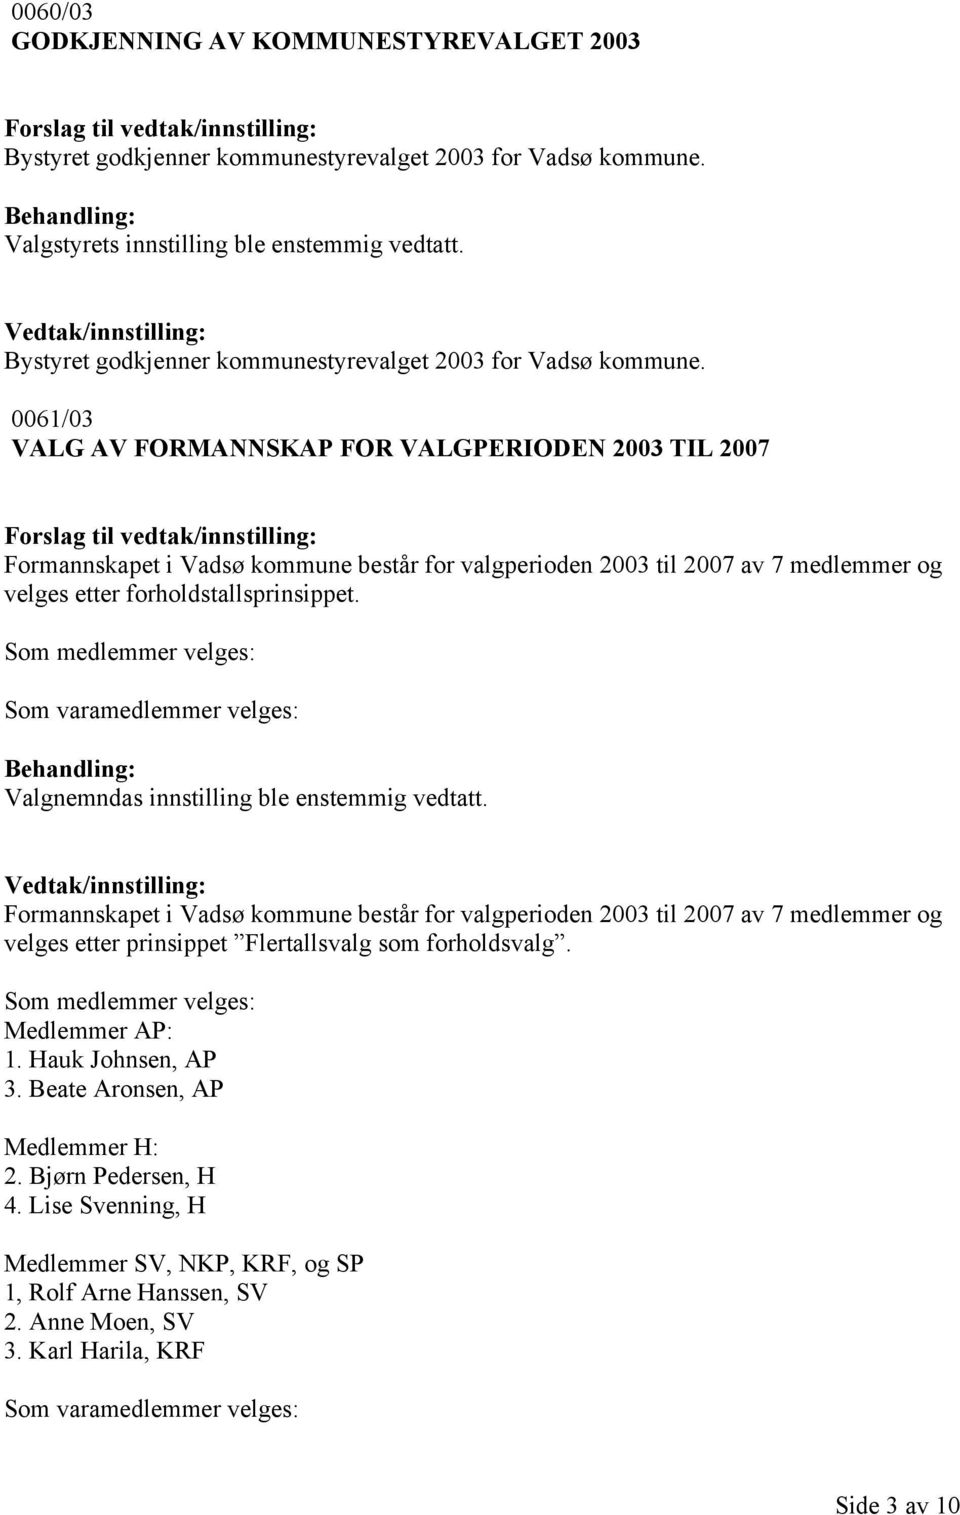 0061/03 VALG AV FORMANNSKAP FOR VALGPERIODEN 2003 TIL 2007 Formannskapet i Vadsø kommune består for valgperioden 2003 til 2007 av 7 medlemmer og velges etter forholdstallsprinsippet.